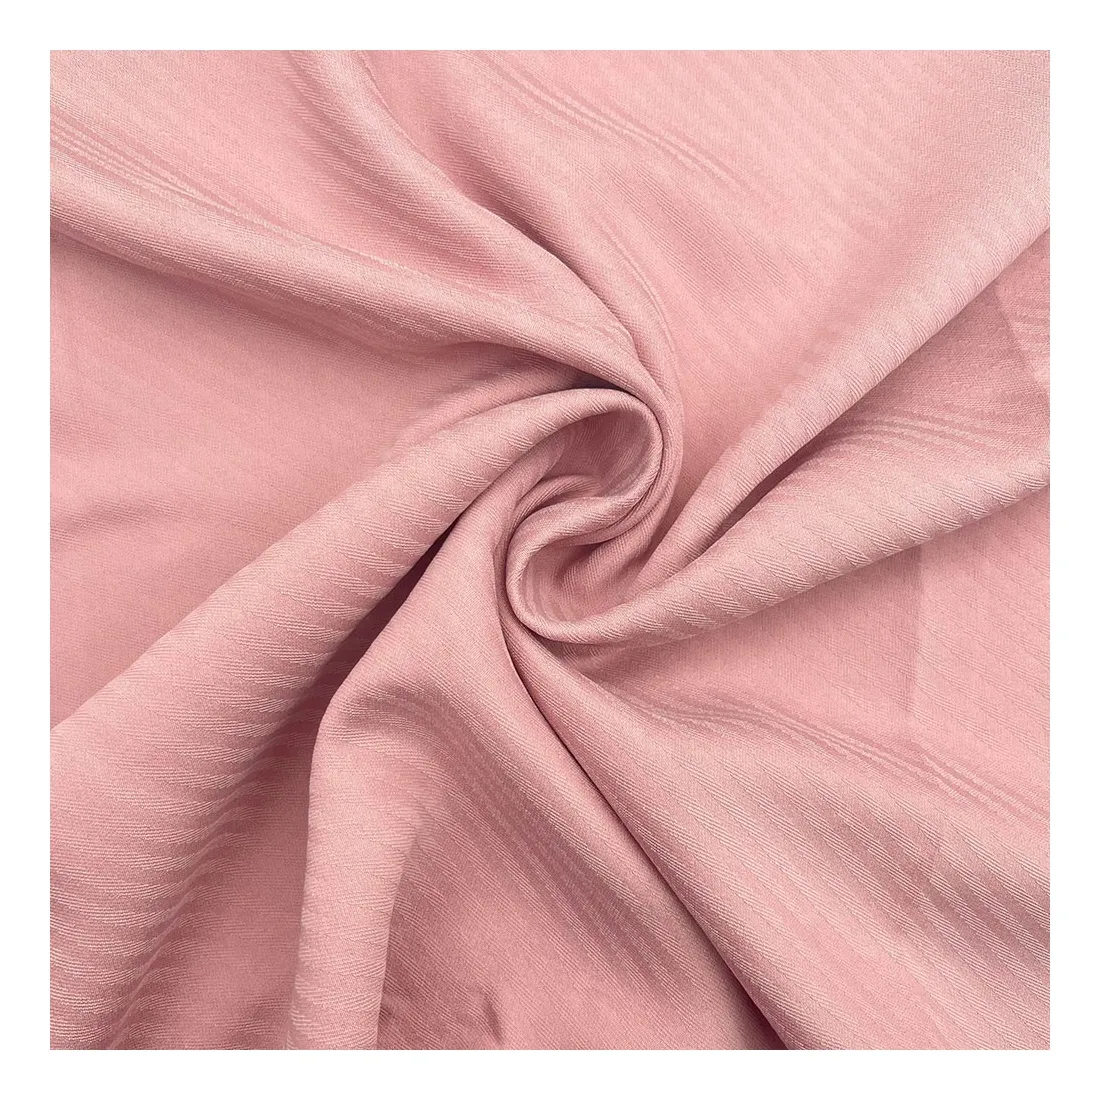 Tela de satén jacquard personalizada punto grande satén rayón viscosa raya alta calidad nuevo diseño ecológico para ropa femenina